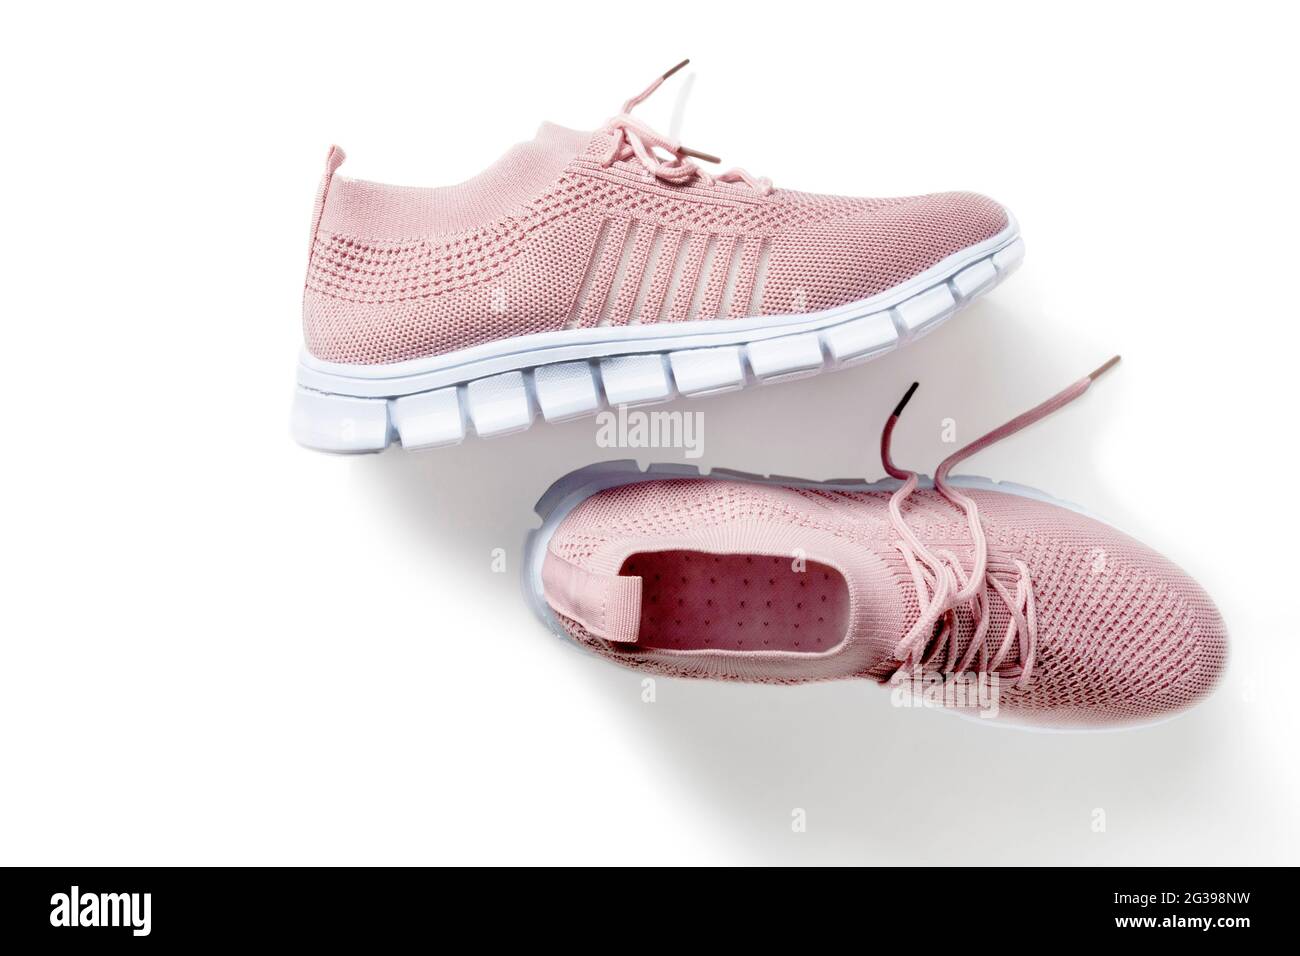 Zapatillas mujer de color rosa con un tejido suave y ligero un blanco Fotografía de stock -